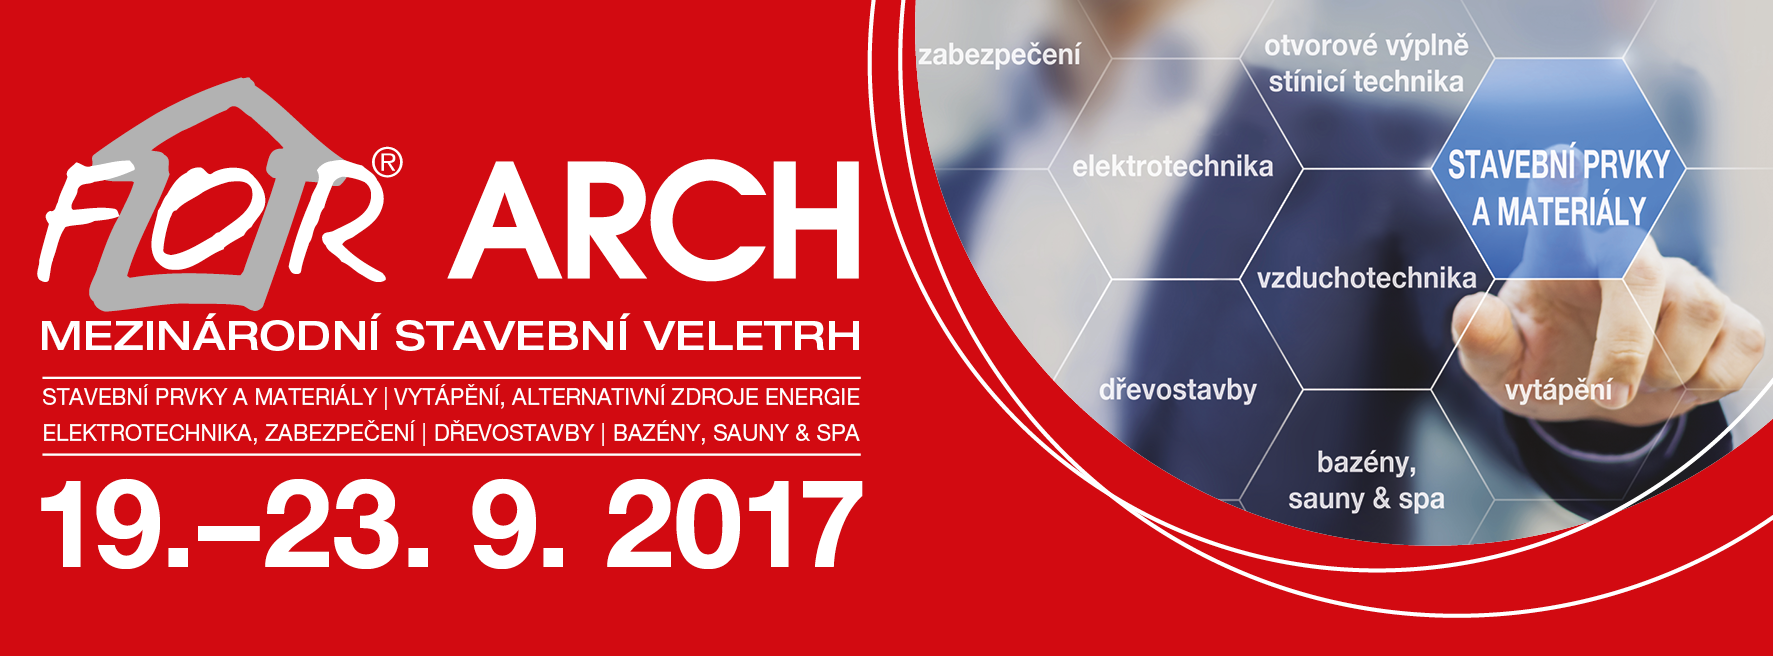 FOR ARCH 2017 přinese řadu zajímavých soutěží a konferencí